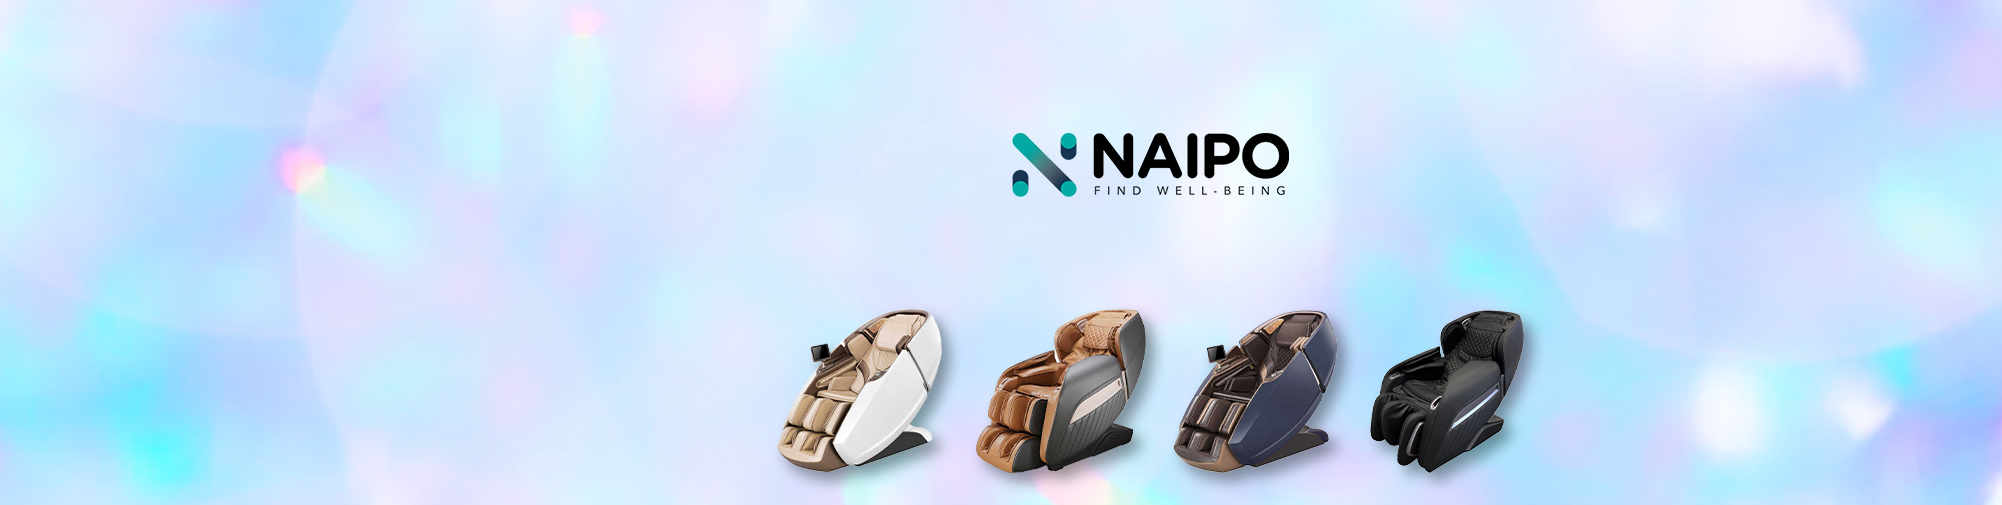 NAIPO - Продукти за масаж за целия свят | Massage chair world